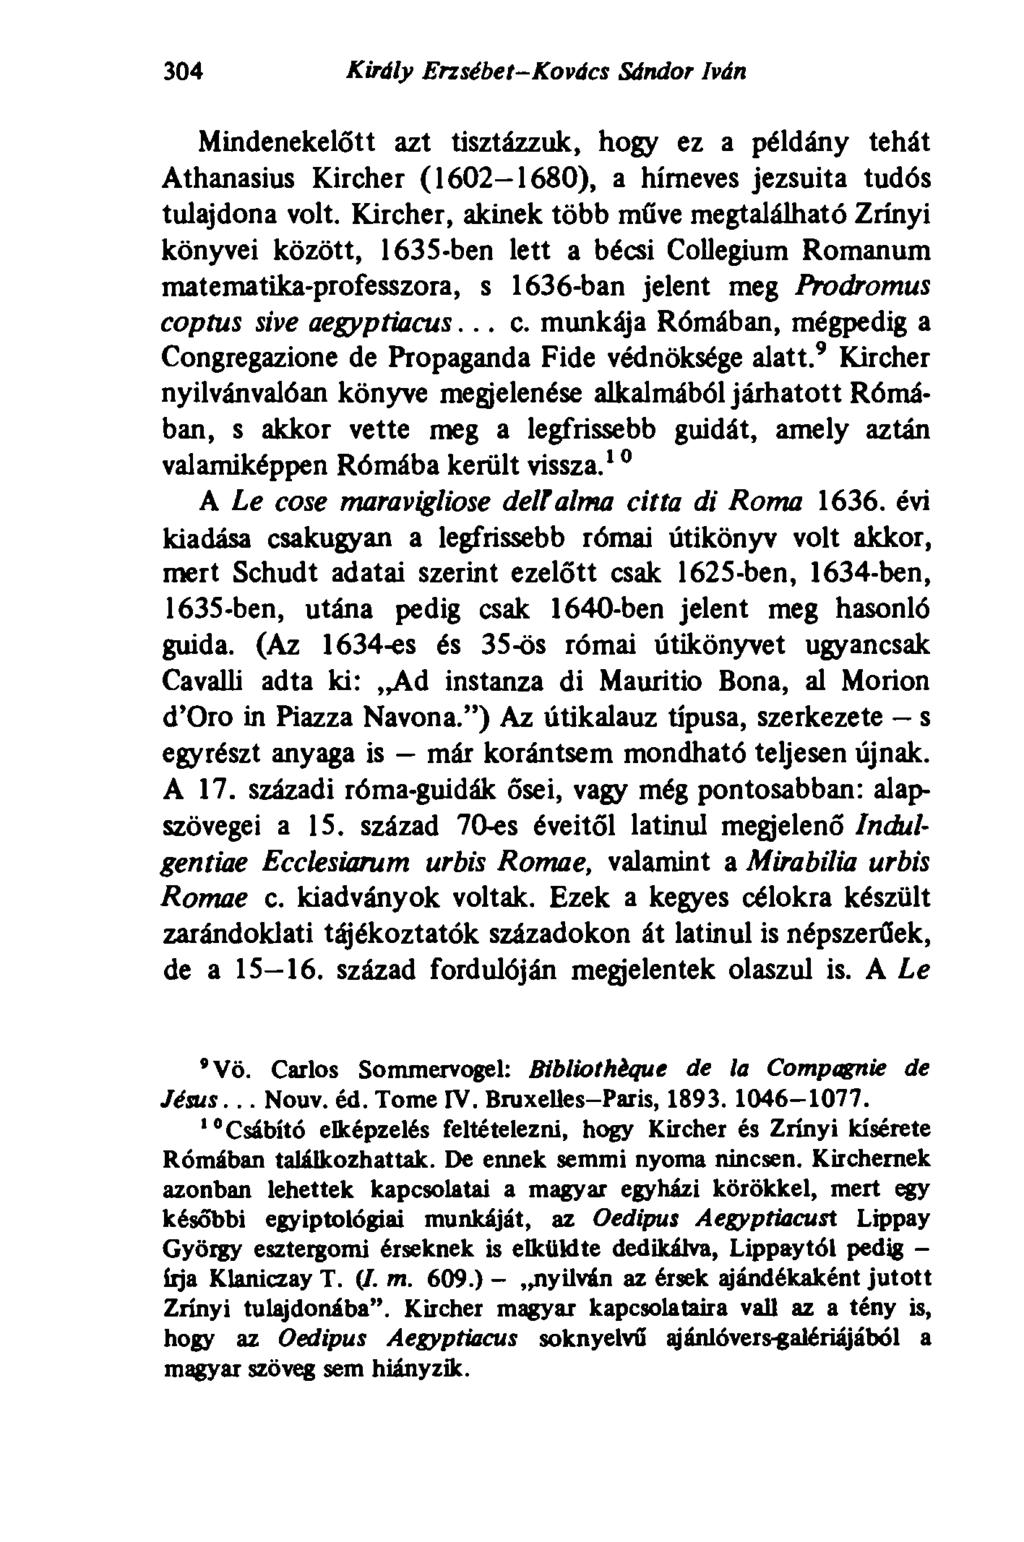 304 Király Erzsébet-Kovács Sándor Iván Mindenekelőtt azt tisztázzuk, hogy ez a példány tehát Athanasius Kircher (1602-1680), a hírneves jezsuita tudós tulajdona volt.